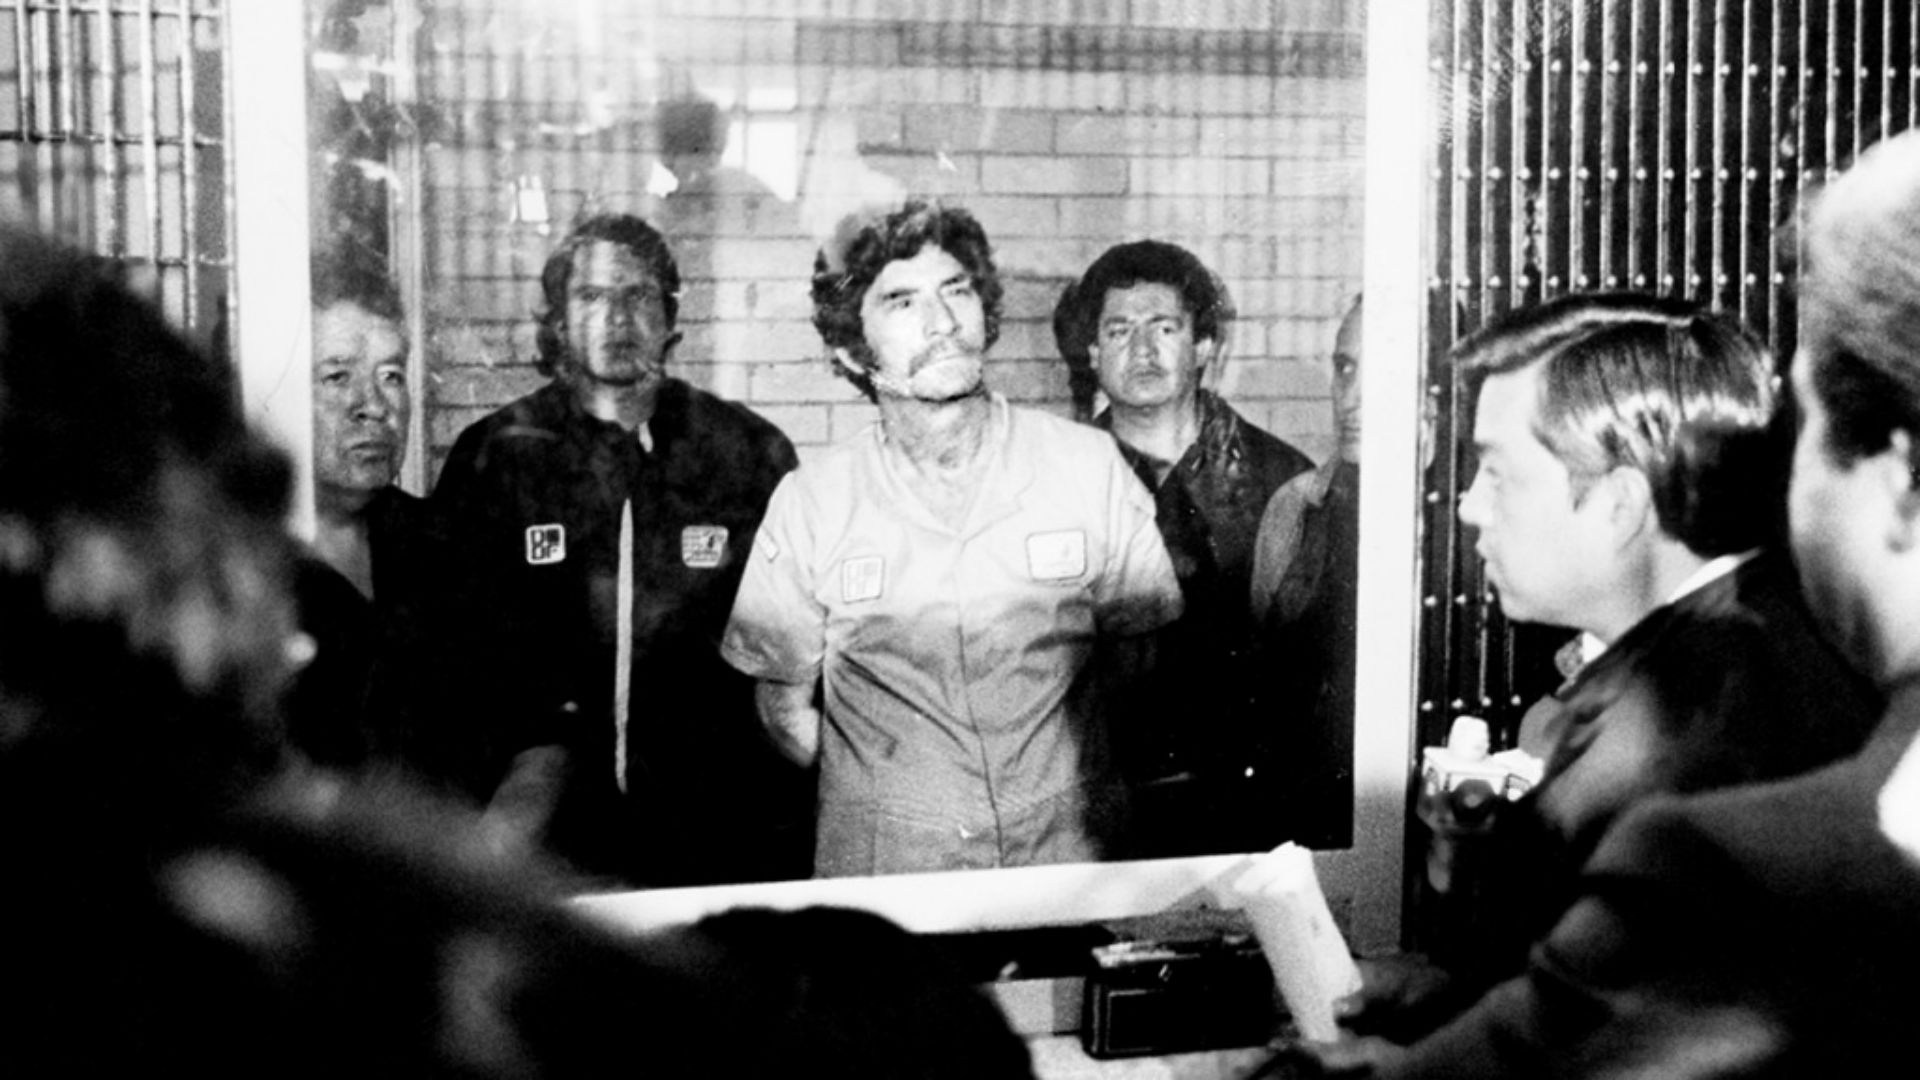 Liberan al narcotraficante “Don Neto” culpable de asesinato en 1985